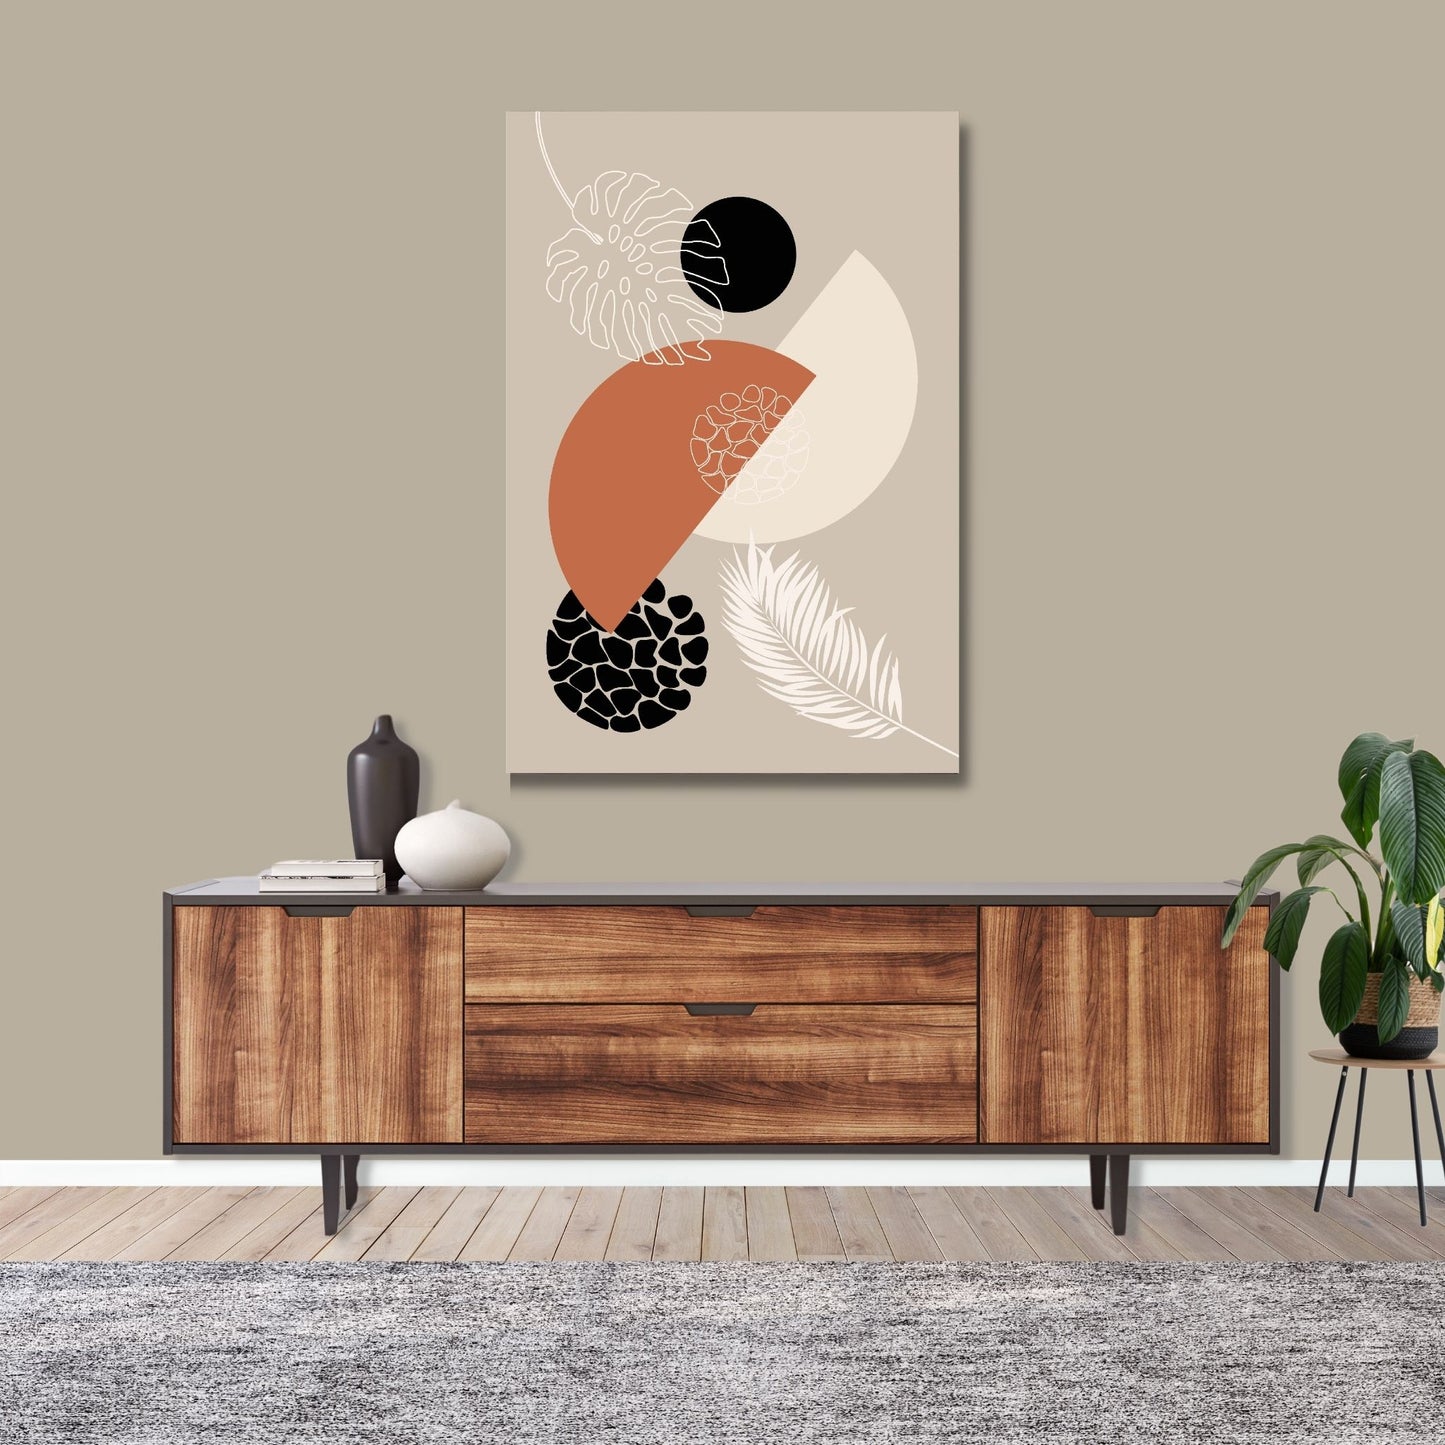 Abstract Shapes No1.1 i sort, beige, rust og hvite fargenyanser. Plakat har en hvit kant om gir dybde og fremhever motivet. Illustrasjon som viser motiv på lerret.